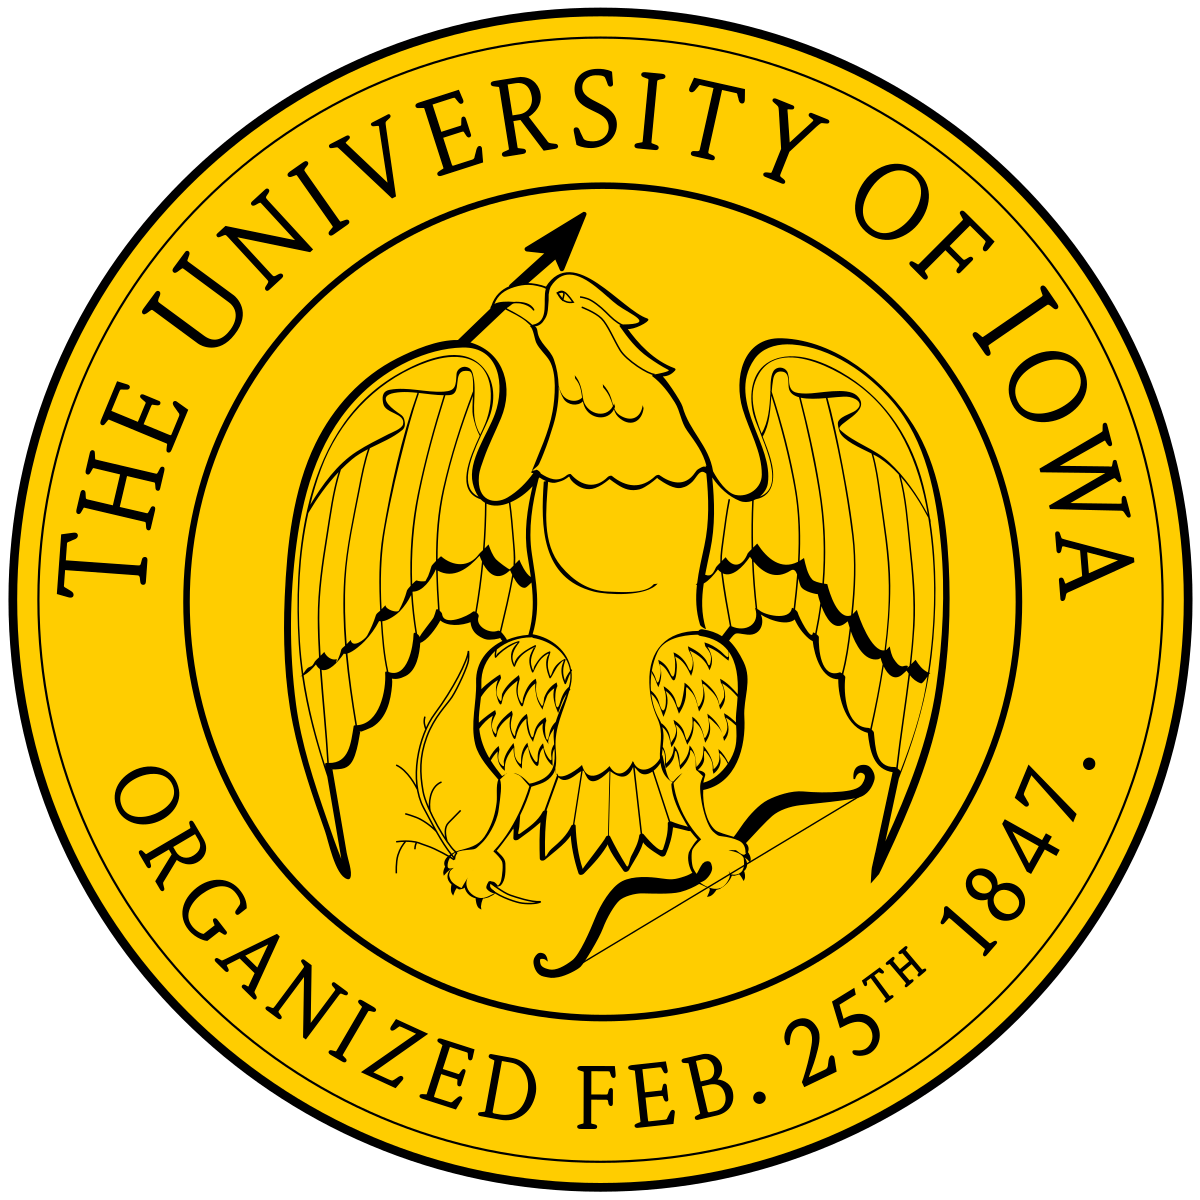 UIowa Logo - University of Iowa